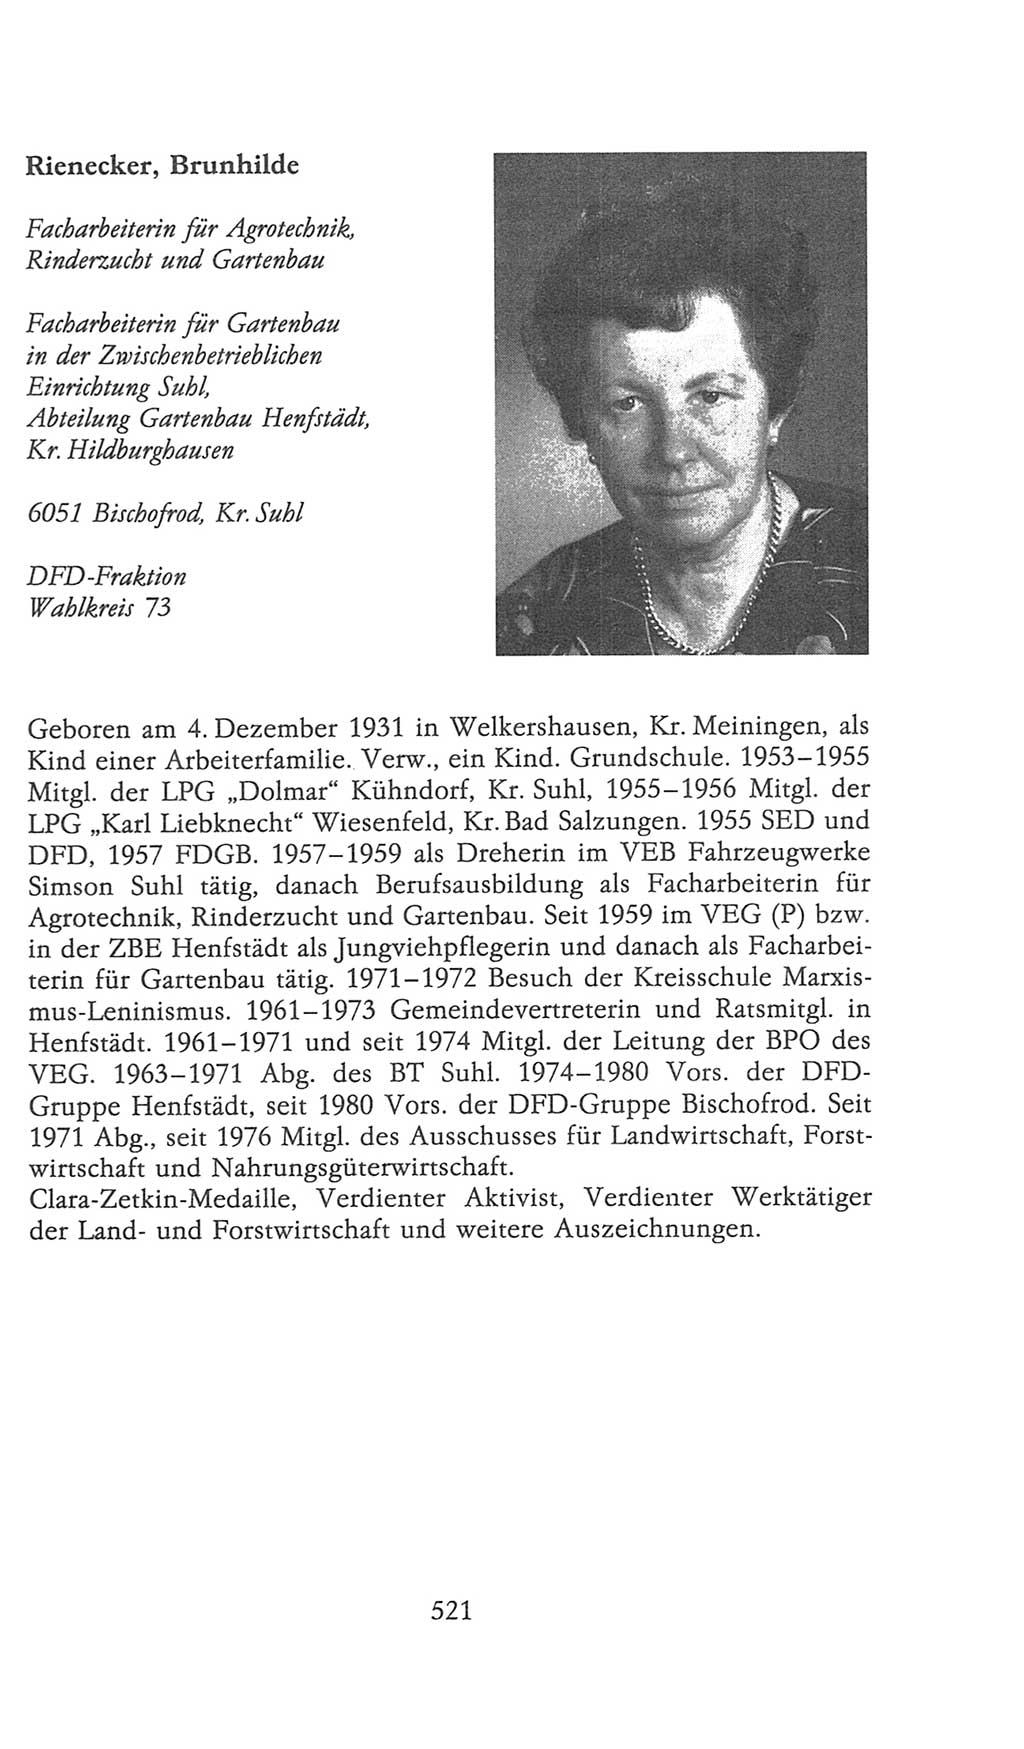 Volkskammer (VK) der Deutschen Demokratischen Republik (DDR), 9. Wahlperiode 1986-1990, Seite 521 (VK. DDR 9. WP. 1986-1990, S. 521)